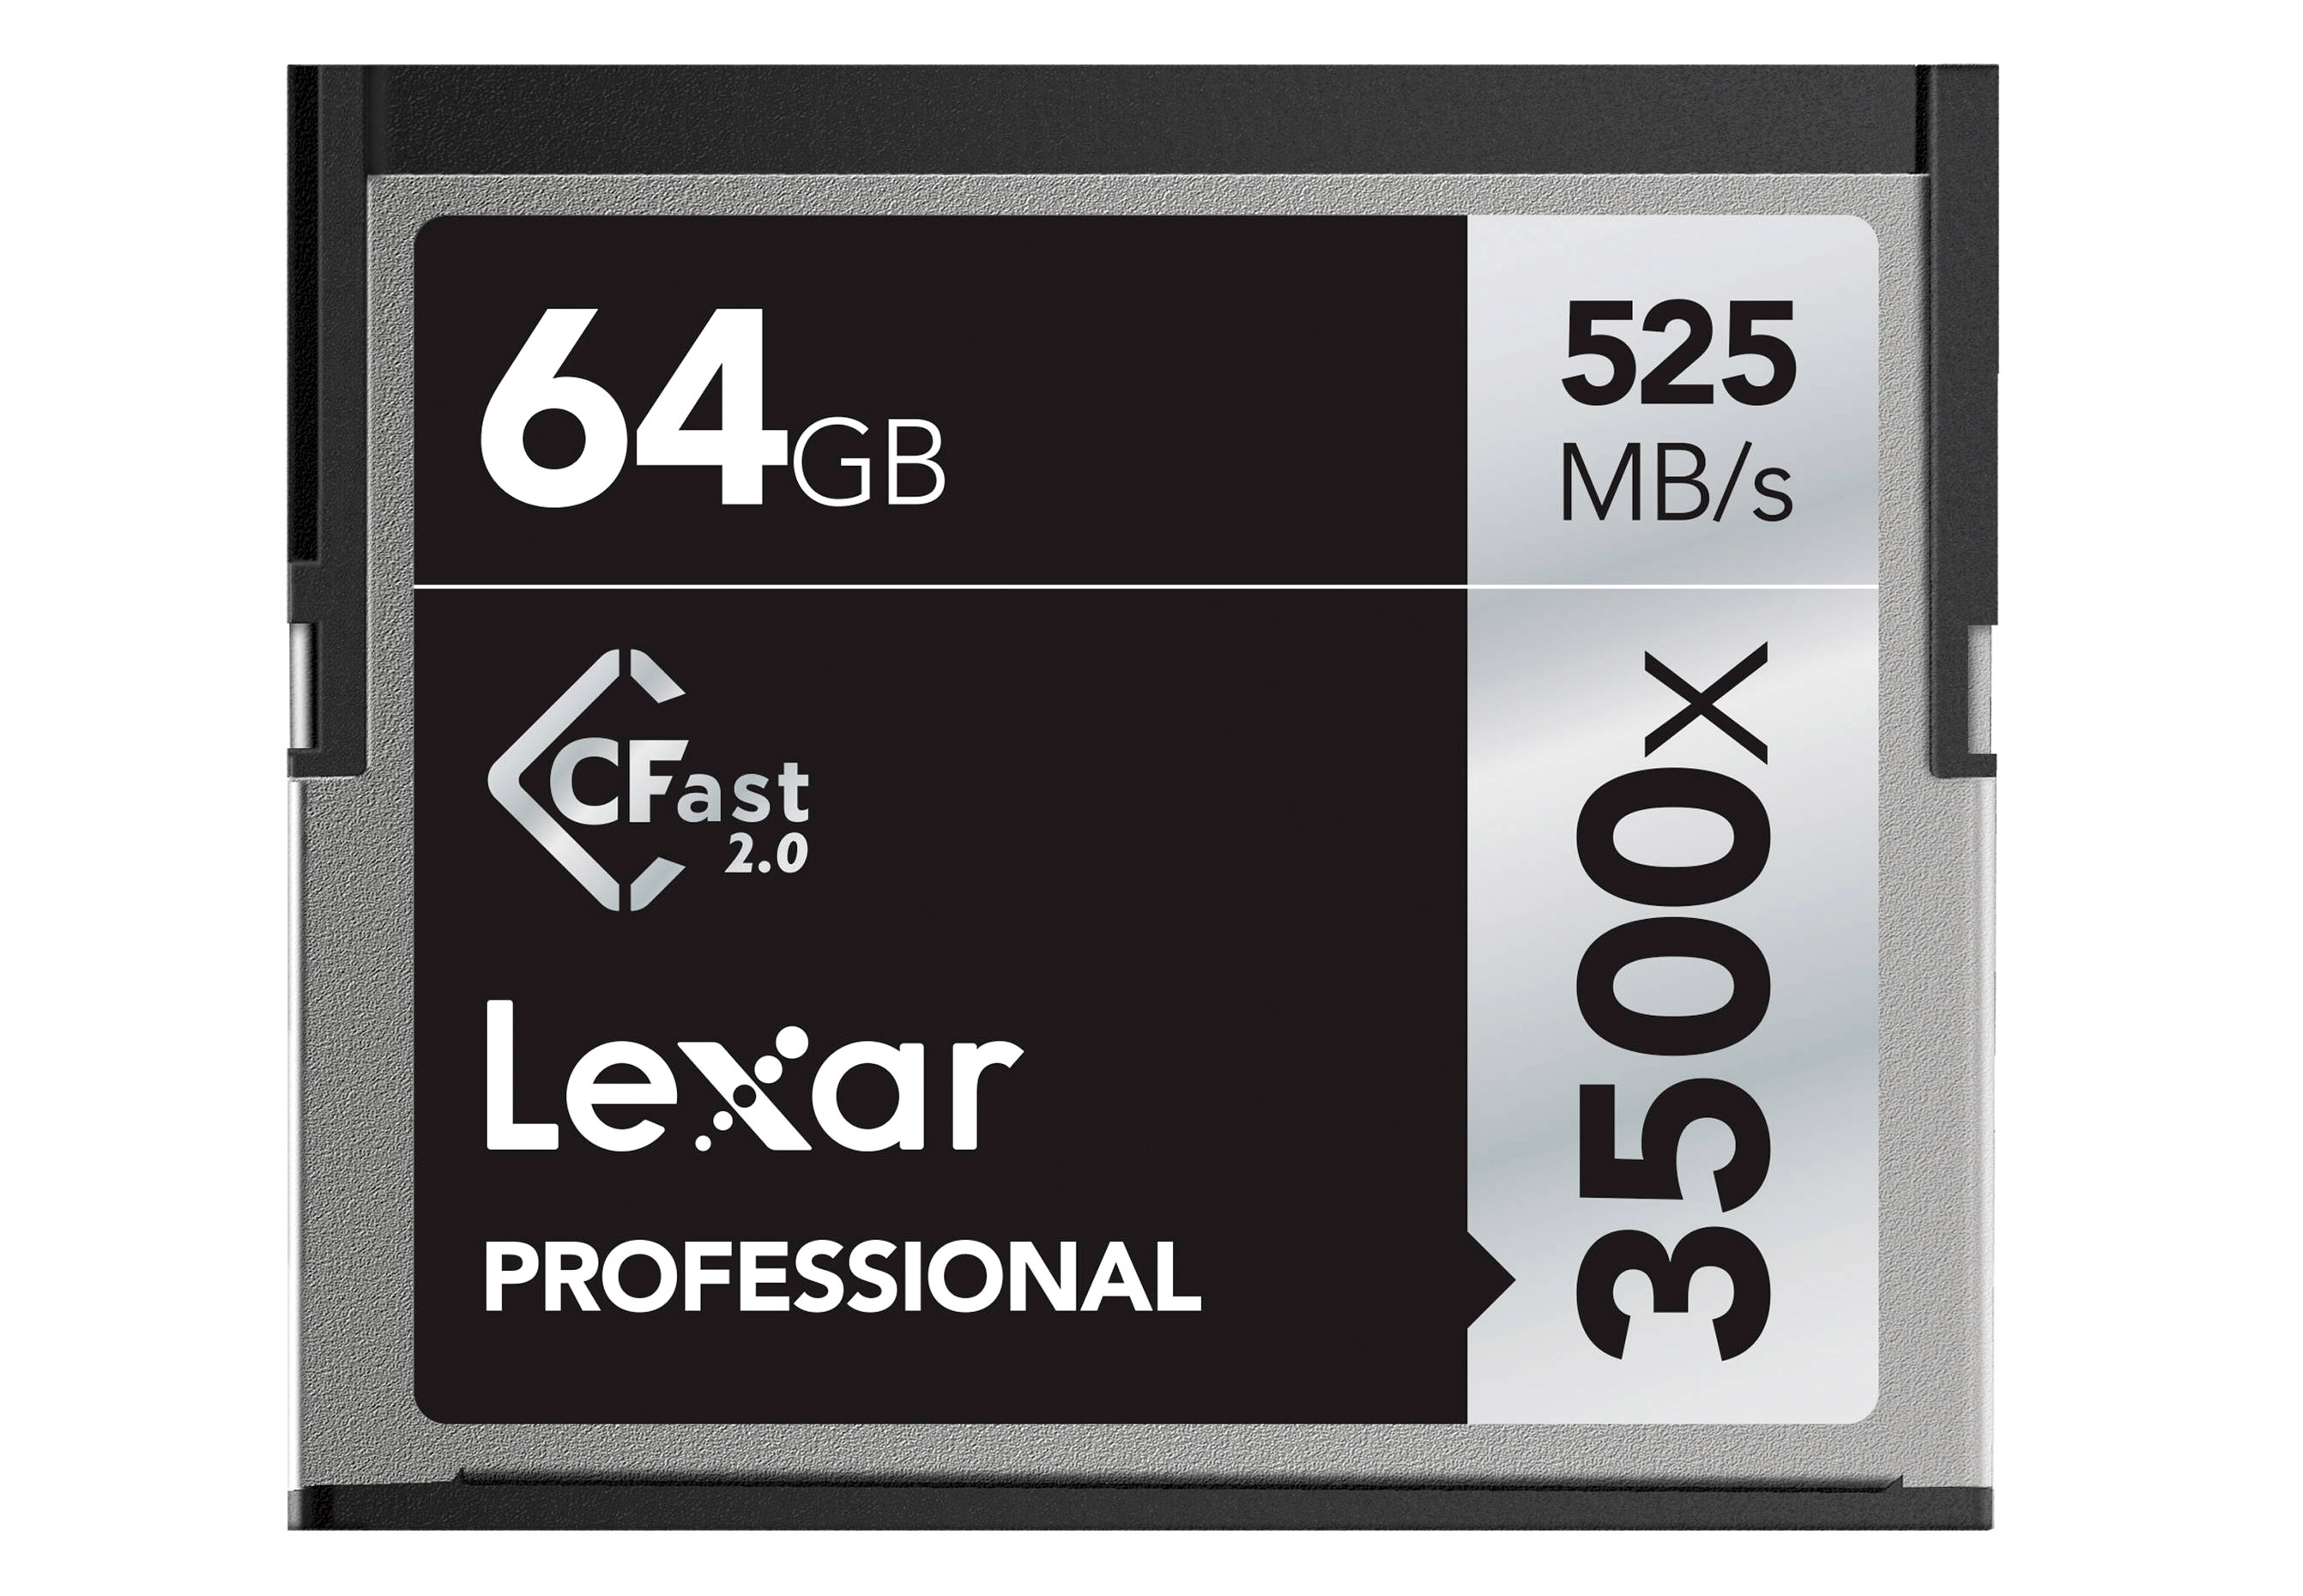 Lexar CFast Professional 64 GB (525 MB/s)